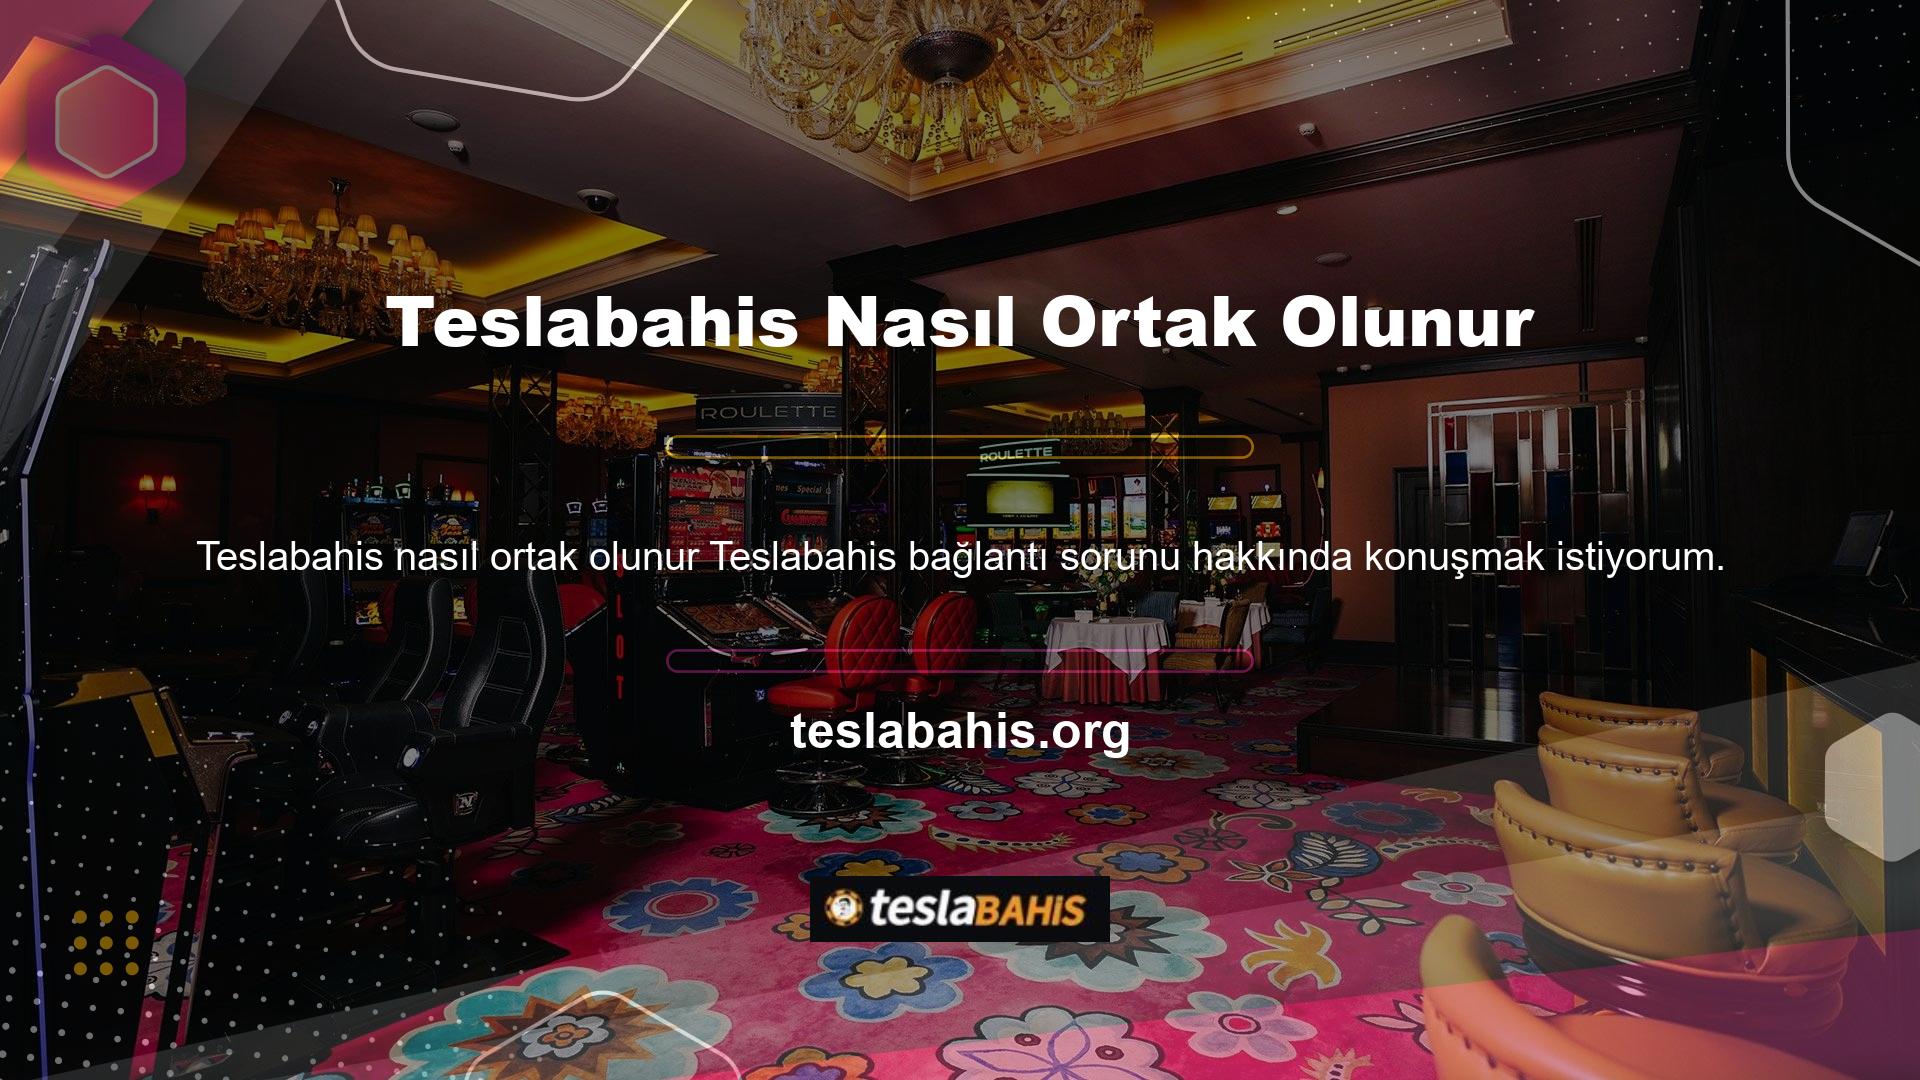 Türk casino yasaları ve spor bahisleri lisansına ihtiyaç duyulması ve yüksek vergi oranları nedeniyle hiç kimse spor bahisleri lisansı kullanmaz